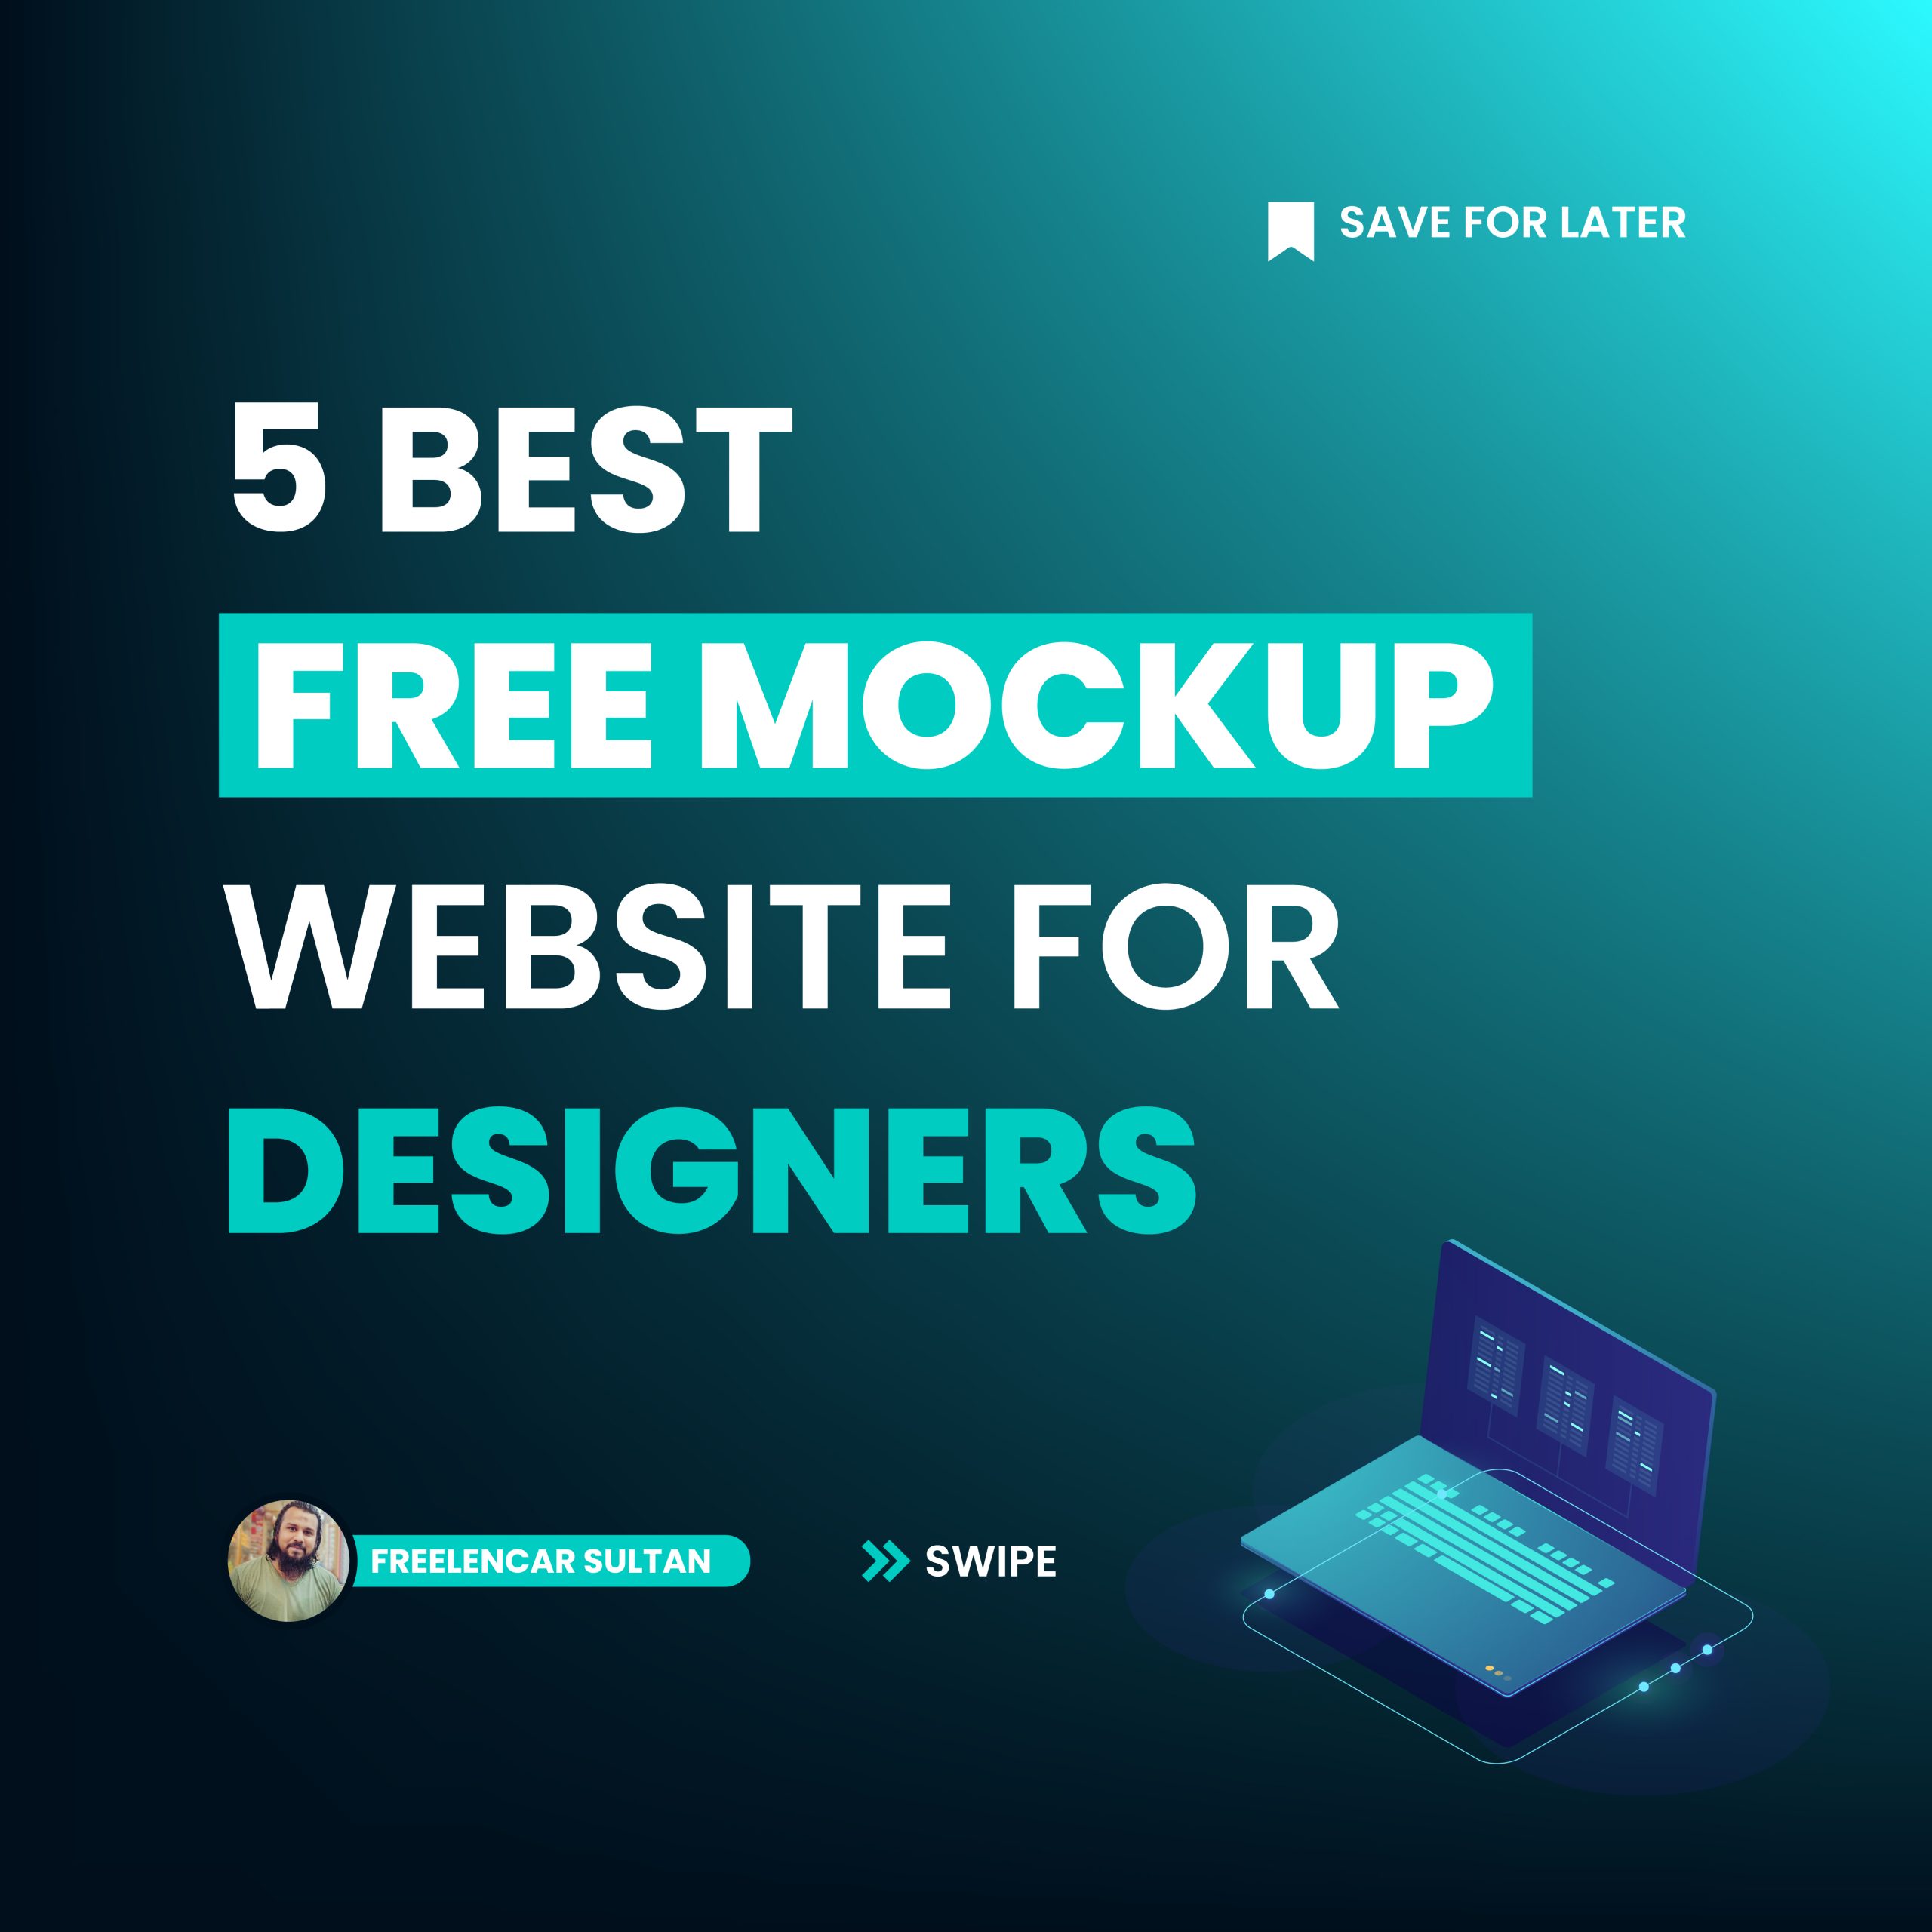 5 BEST FREE MOCKUP WEBSITE FOR DESIGNERS